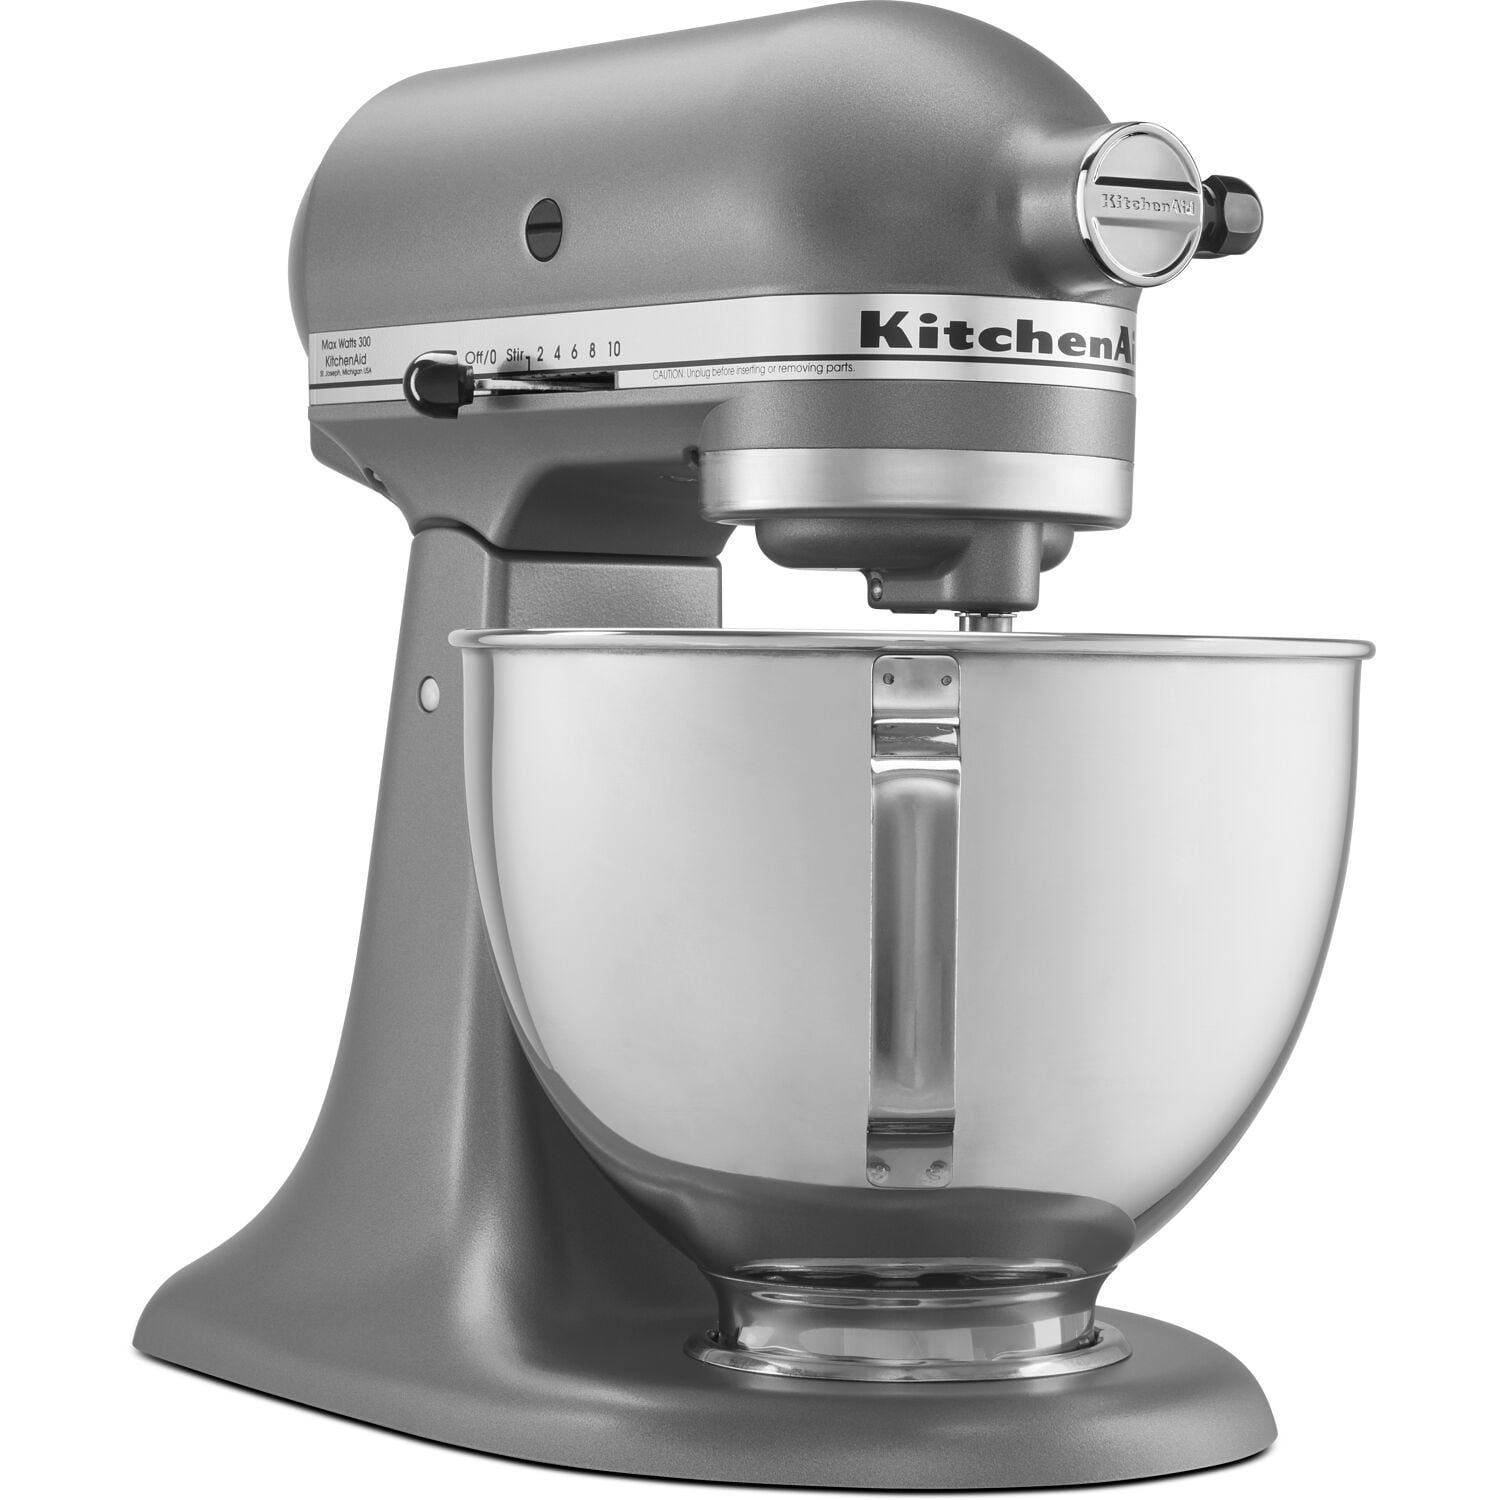 KitchenAid 4.5 QT Tilt-Head Lift Stand Mixer K45SSWH - White - Brand New